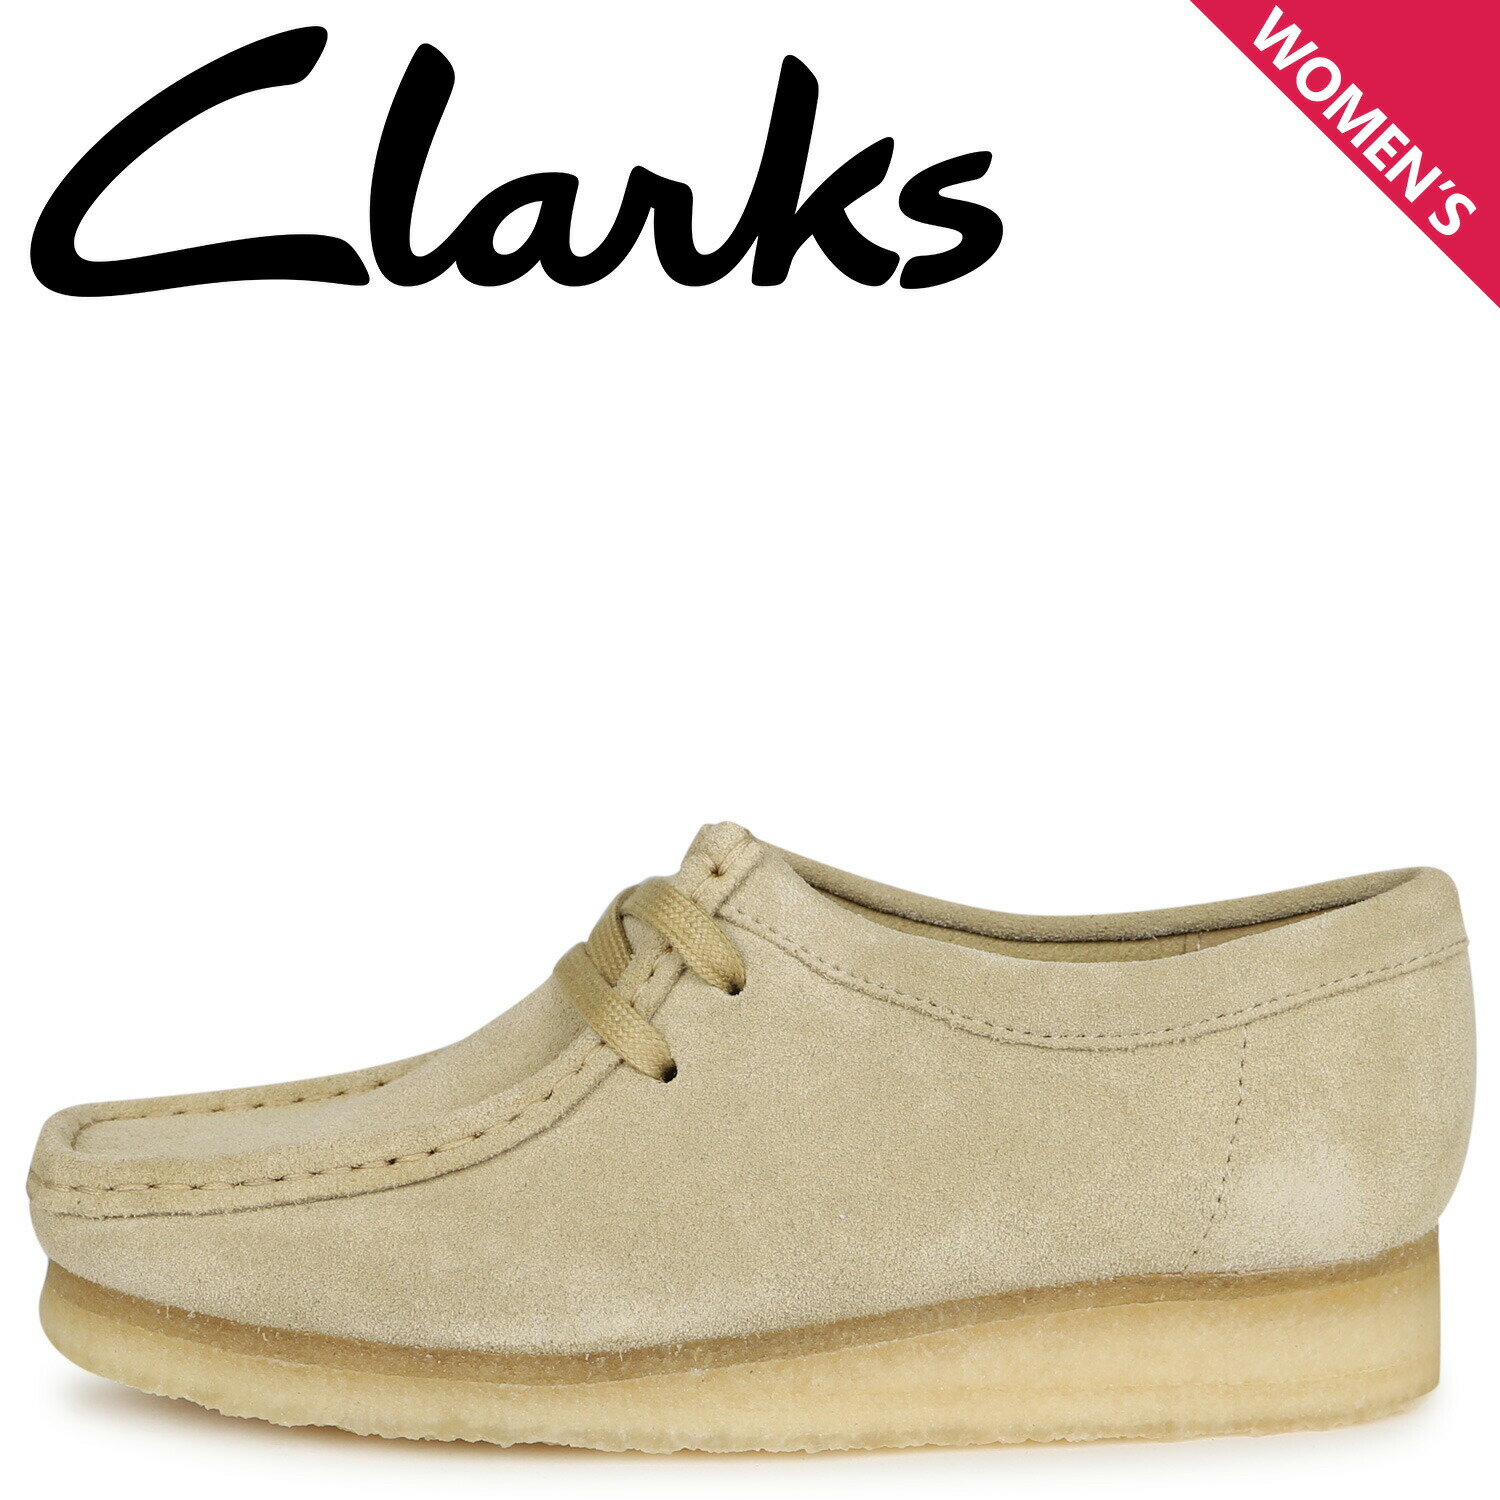 Clarks WALLABEE クラークス ワラビー ブーツ レディース ベージュ 26155545